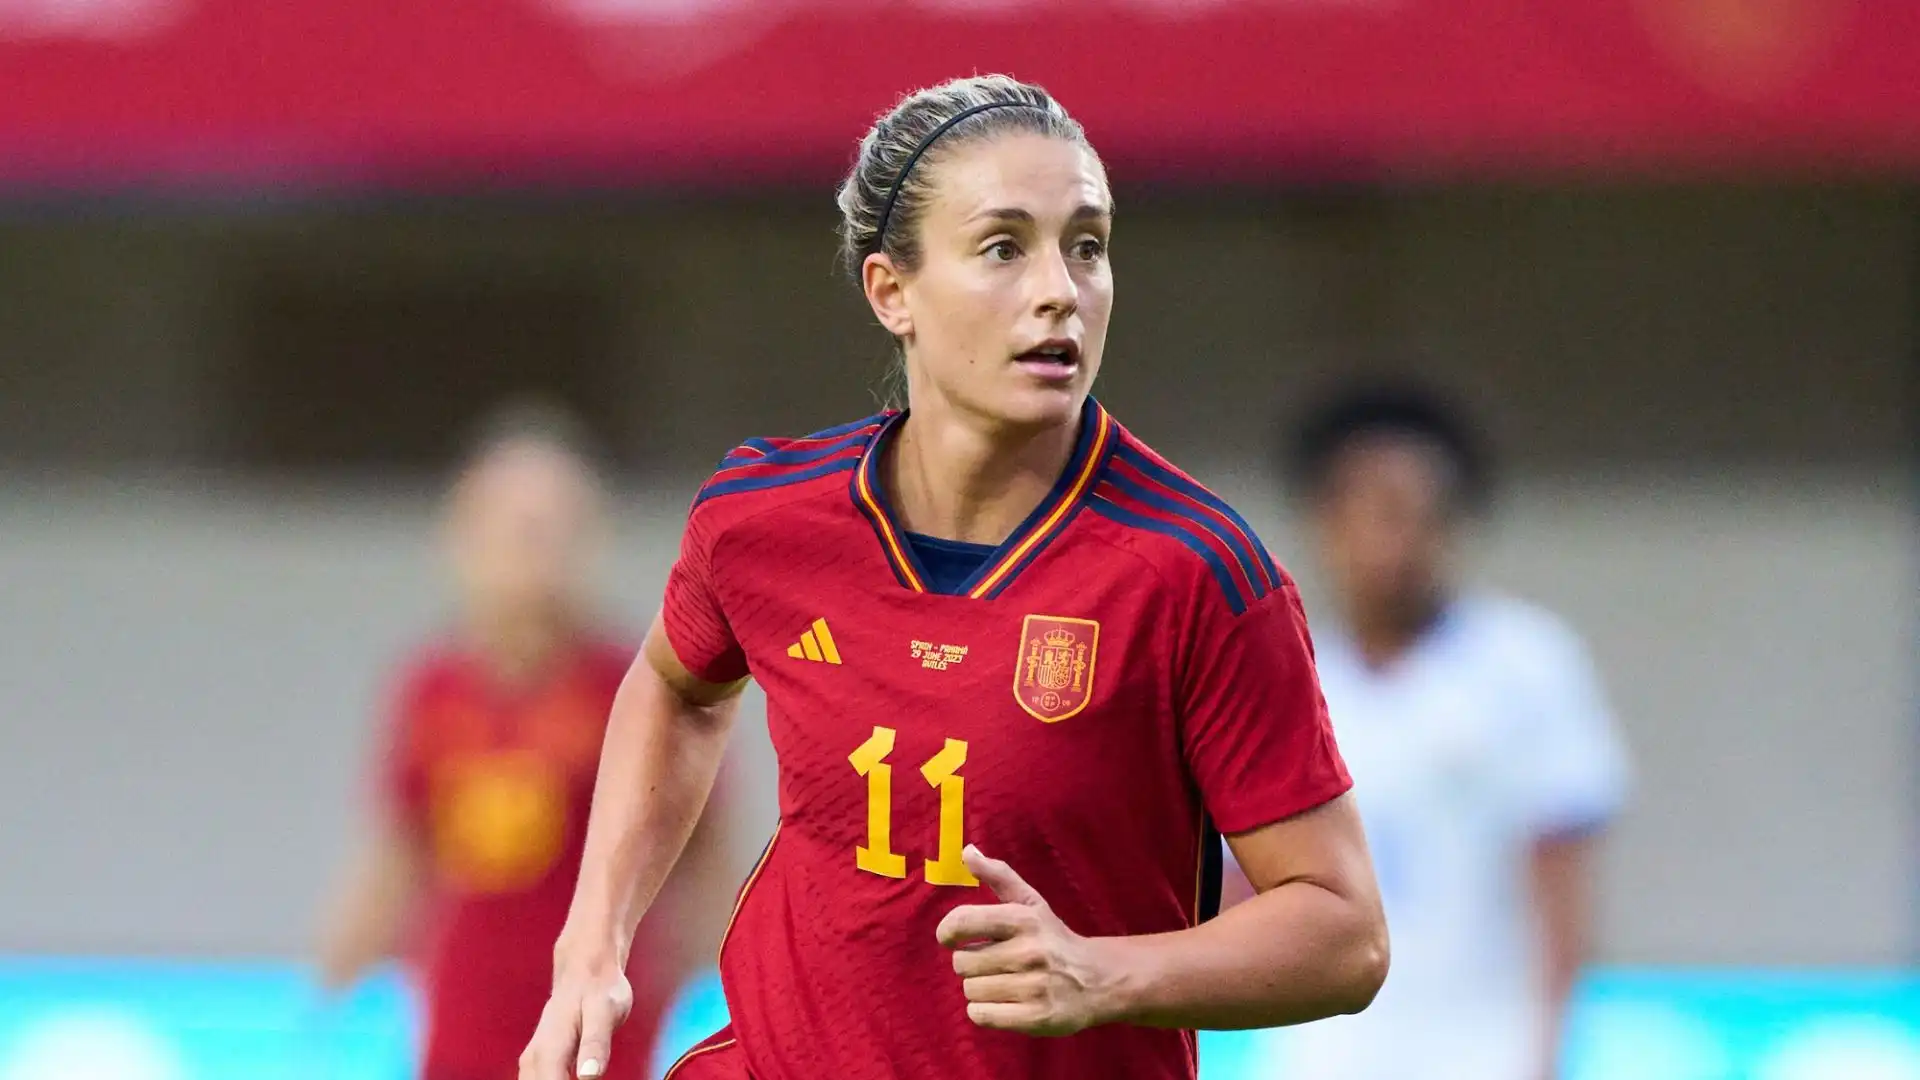 Le spagnole hanno dominato segnando tre gol con Bonmatì, Esther e l'autorete di Del Campo